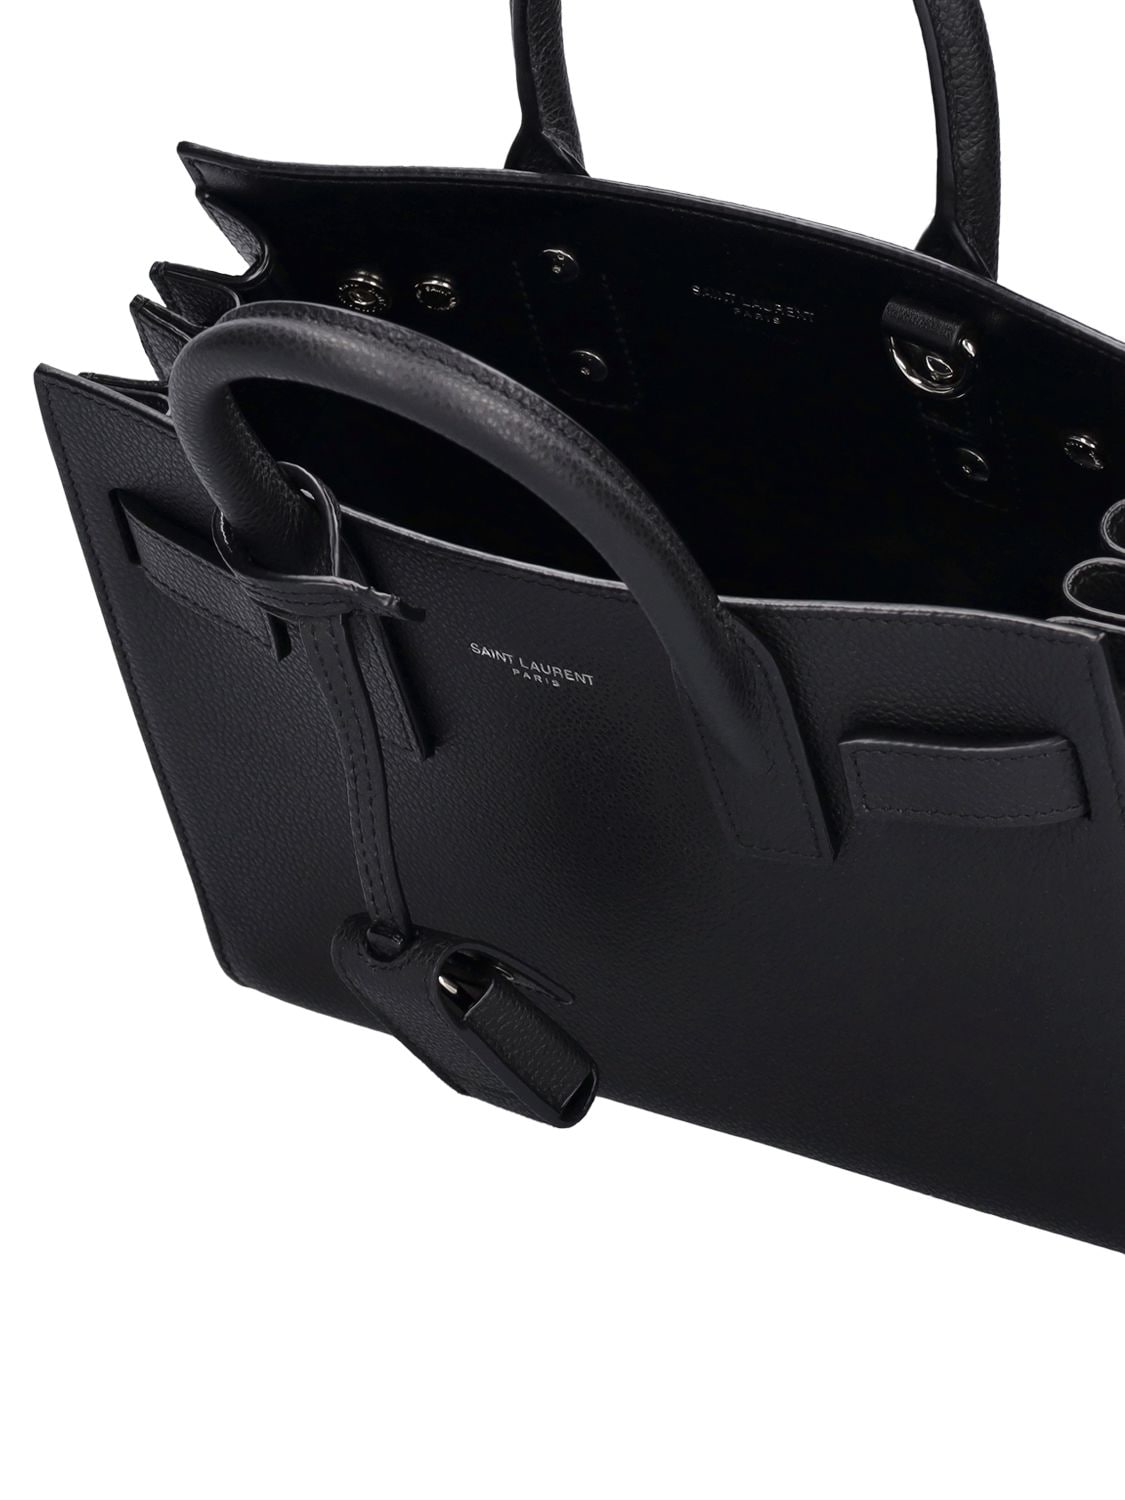 Shop Saint Laurent Nano Sac De Jour Leather Top Handle Bag In Black